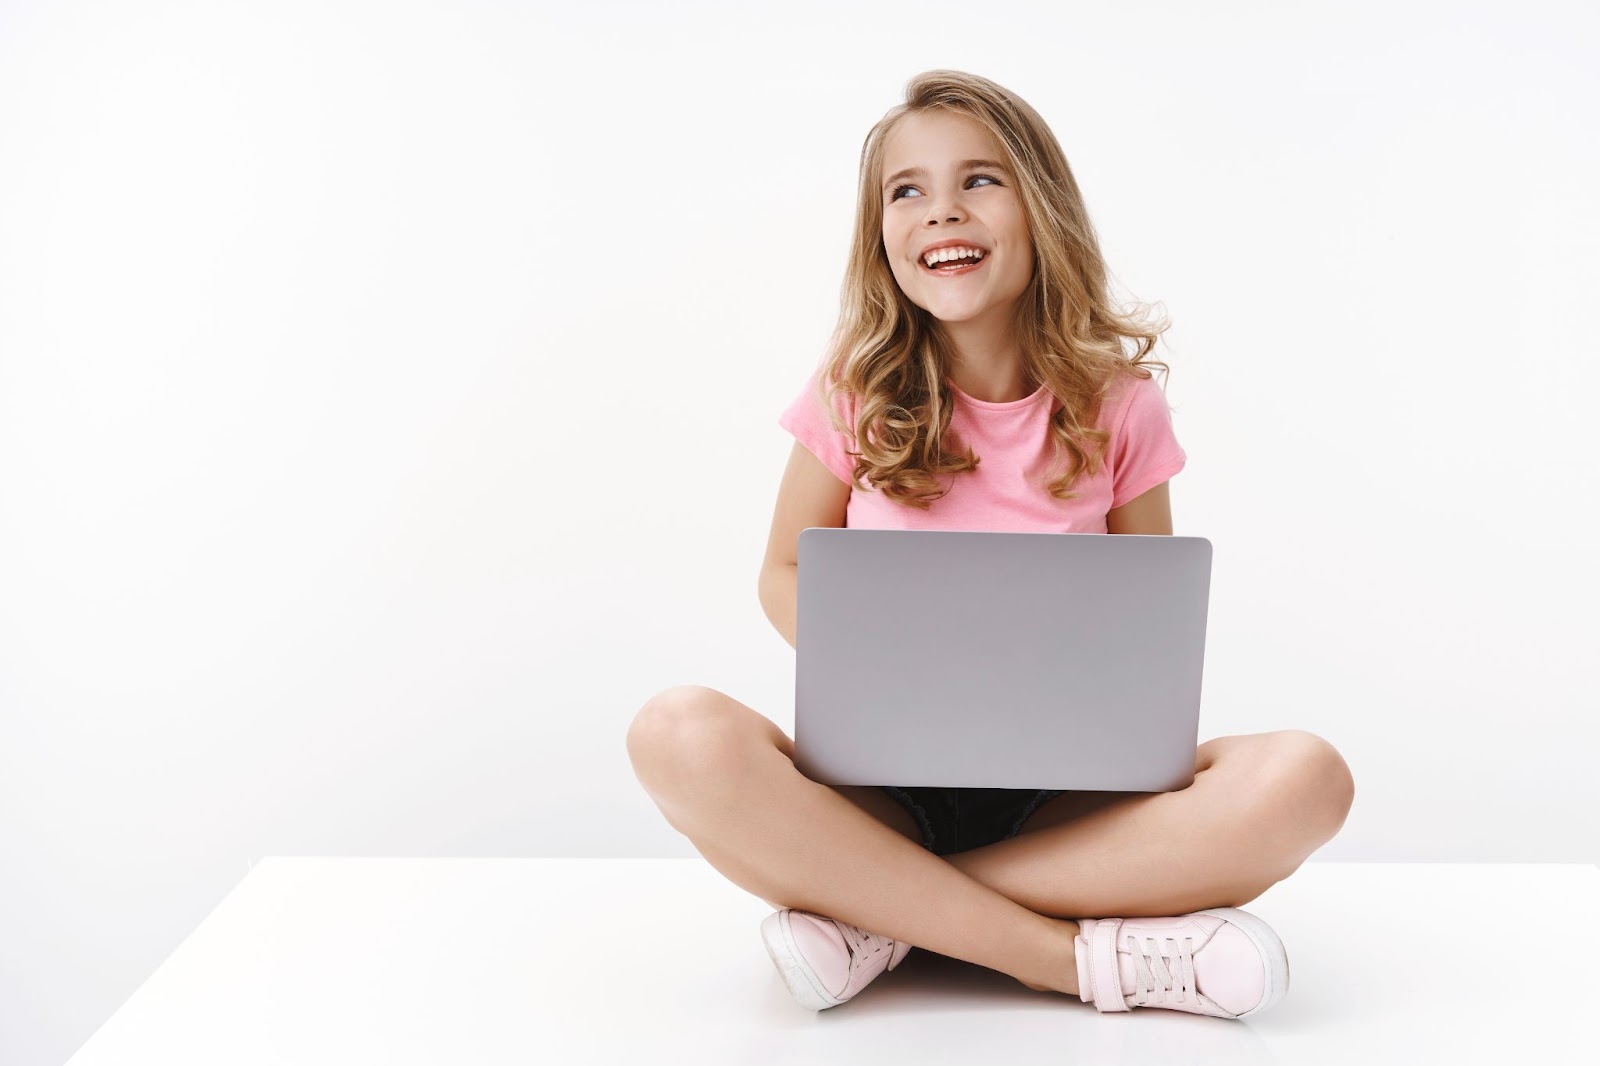 dziewczynka siedzi na podłodze z laptopem i rozwiązuje zagadki dla dzieci